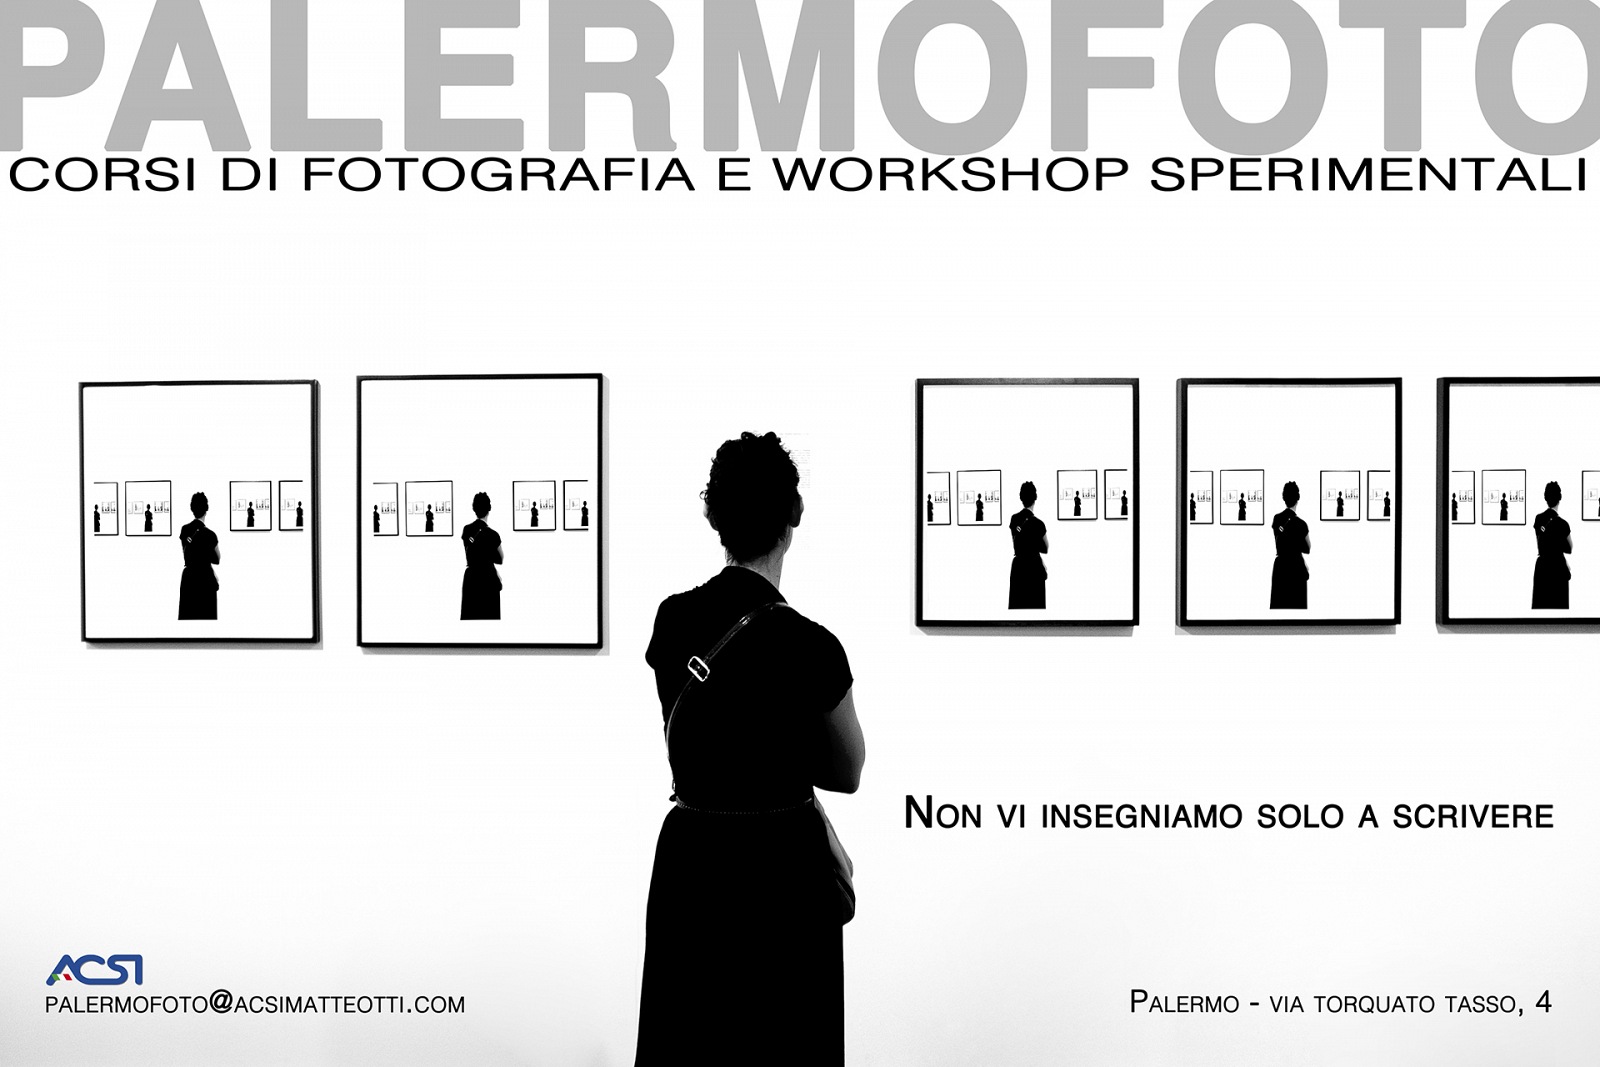 Palermofoto -  sito web